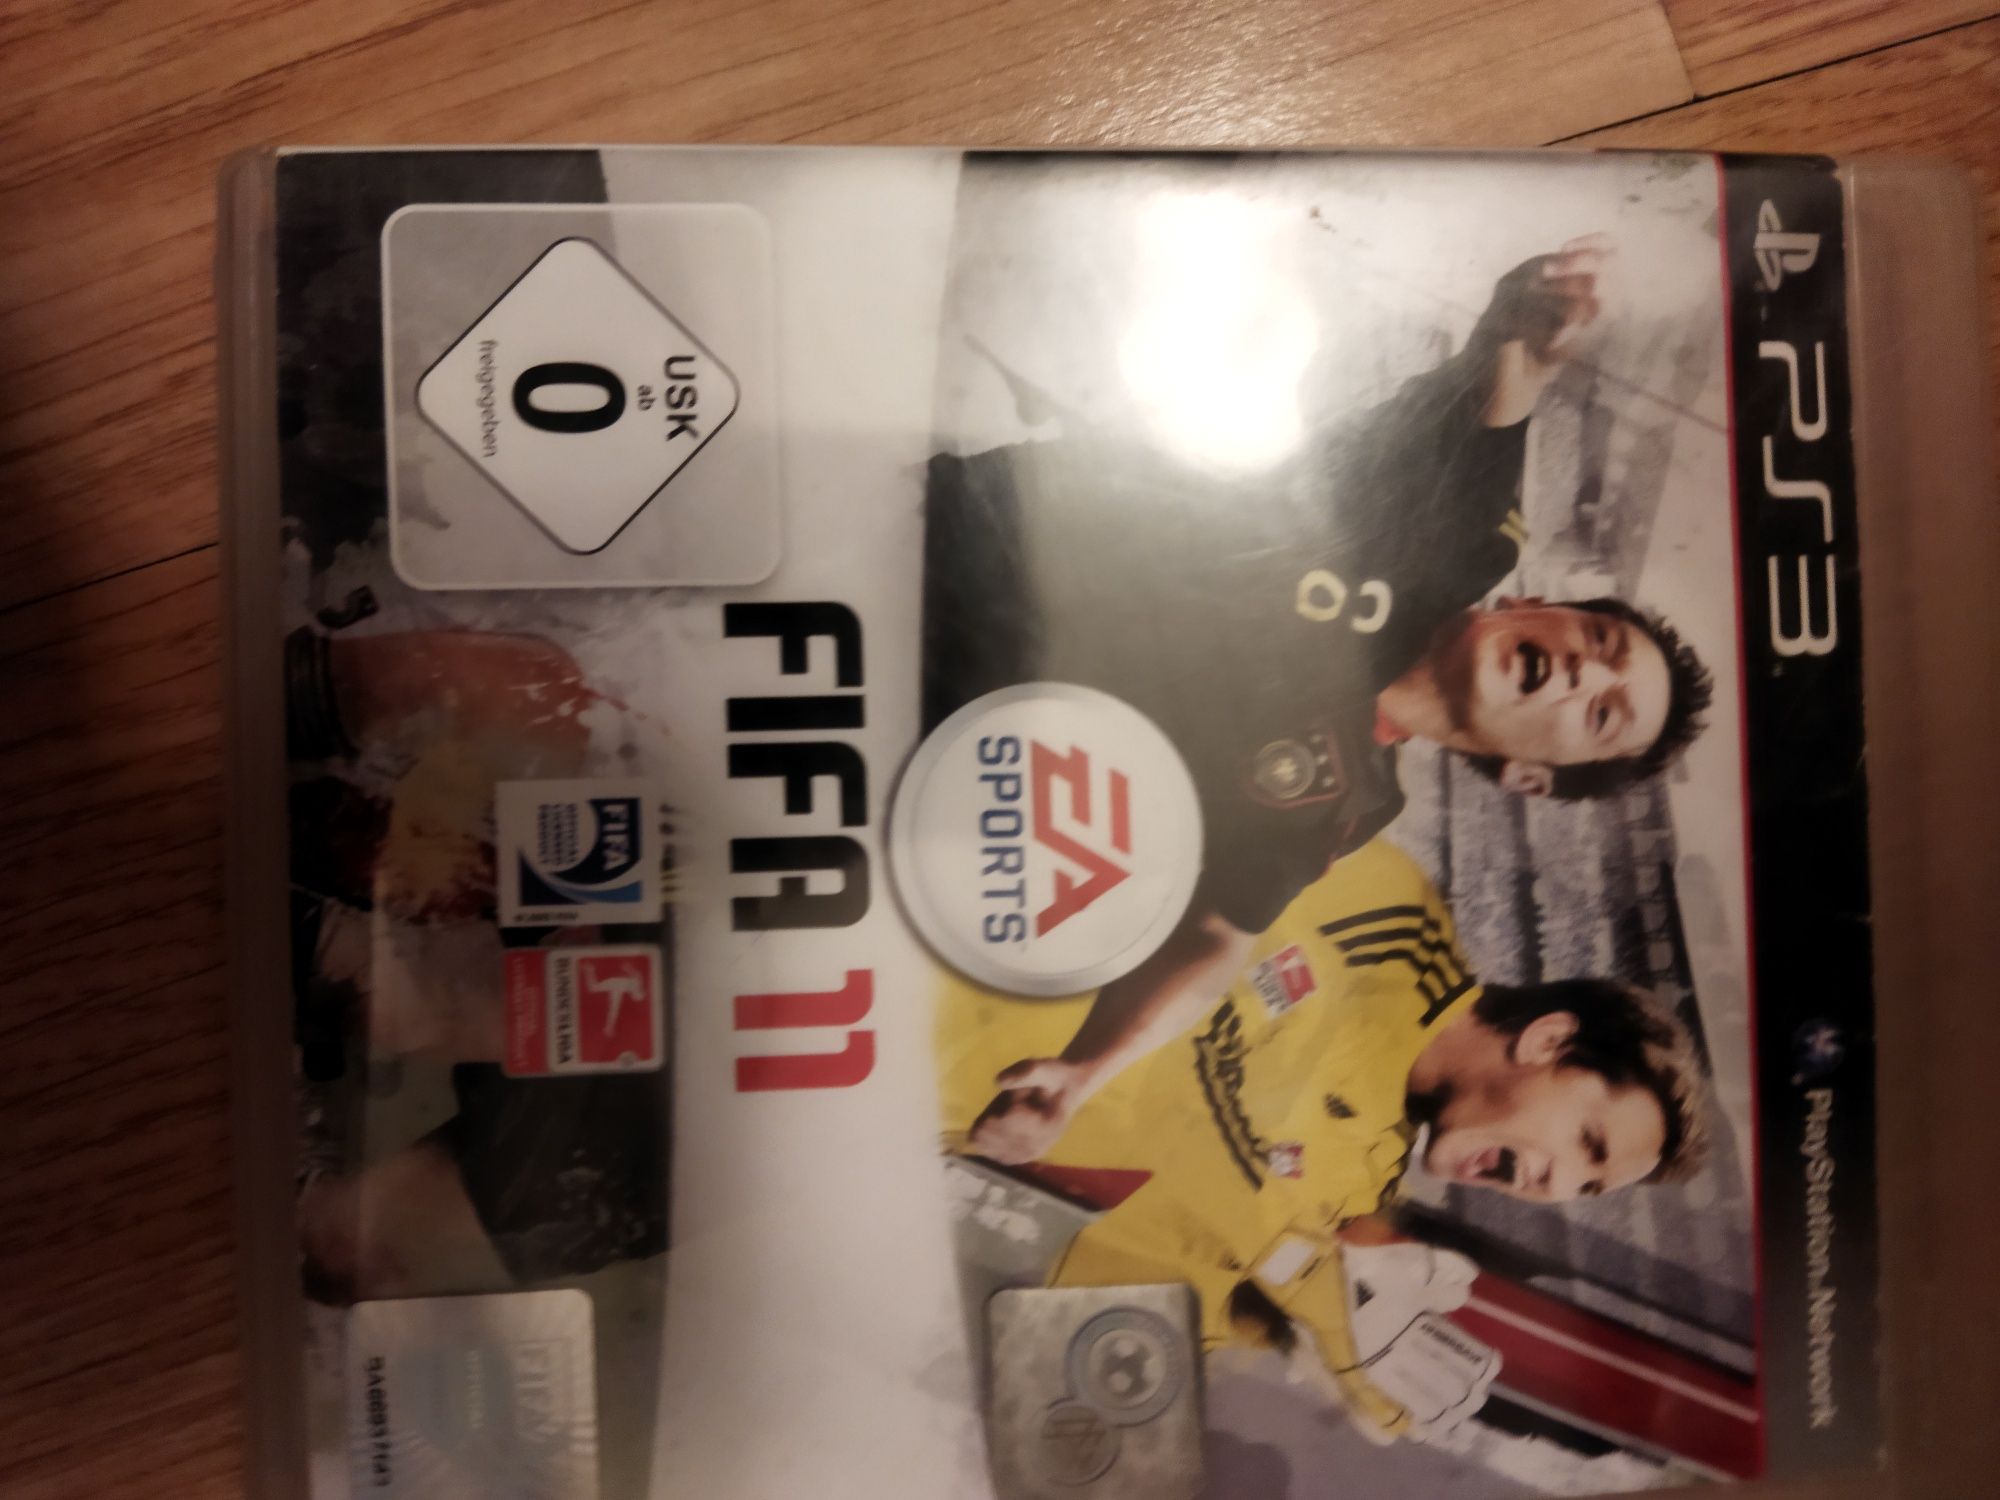 FIFA11 na konsole PlayStation 3 ps3